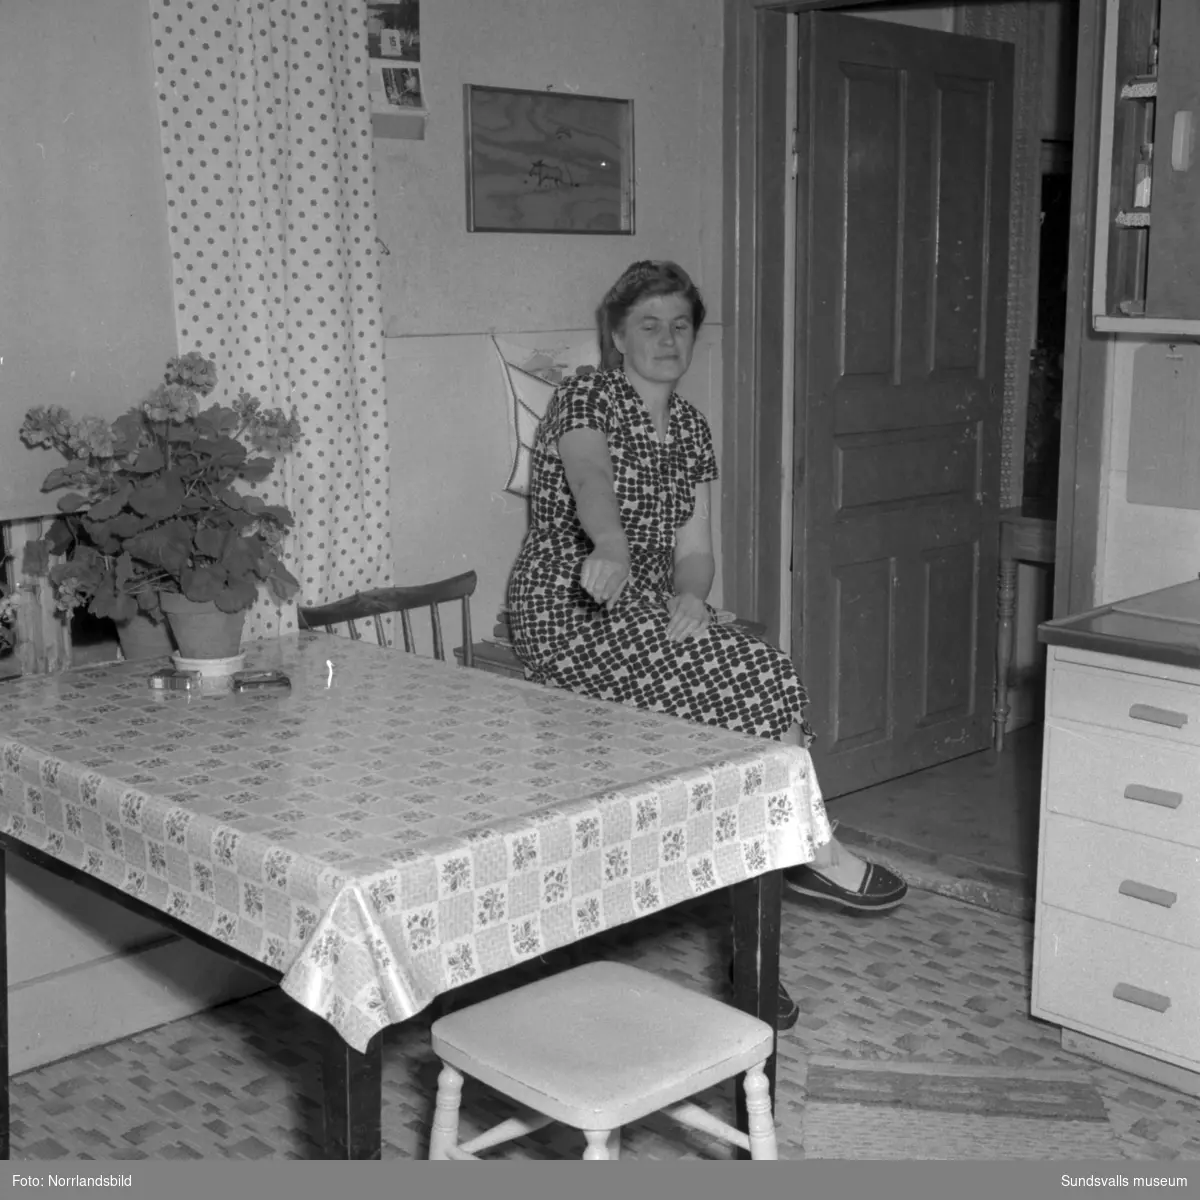 Fru Dagny Westman i Vikesund, Holm, blev hotad av en man med pistol hemma i sitt kök 1956. Mannen stal mat och försvann sedan till skogs. Reportagebilder för Expressen.